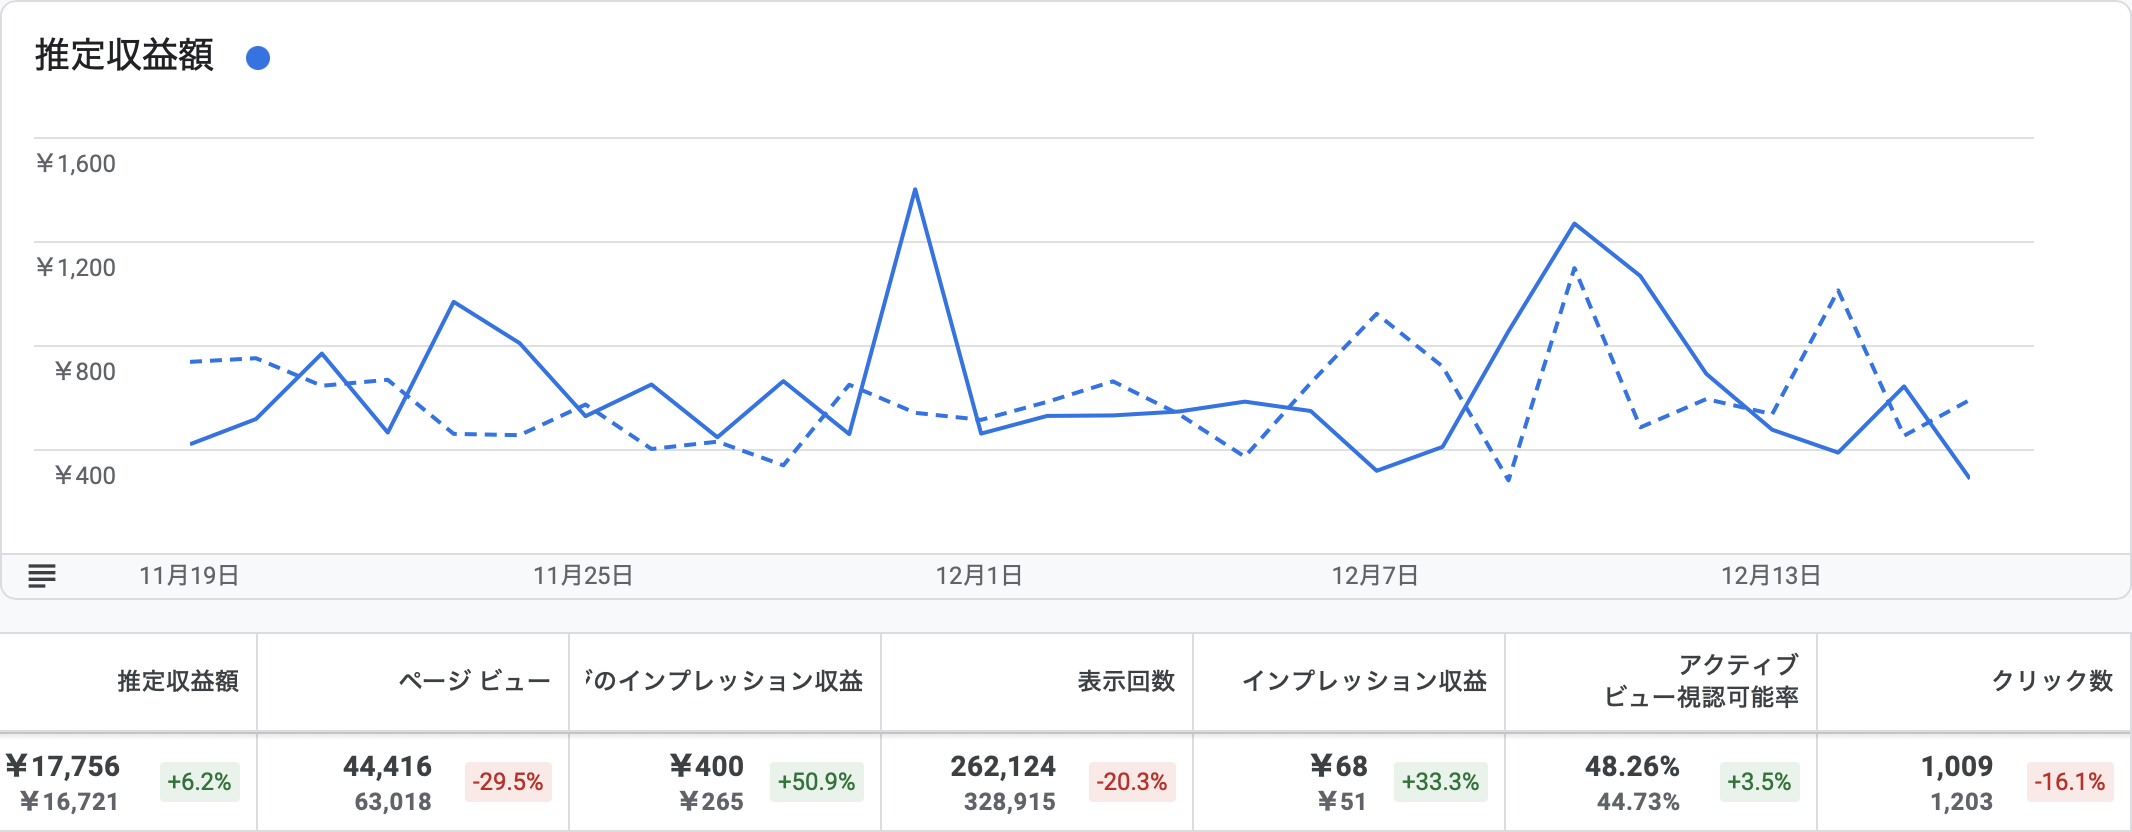 多言語化前4週間と多言語化後最新4週間のGoogleアドセンス売上高比較